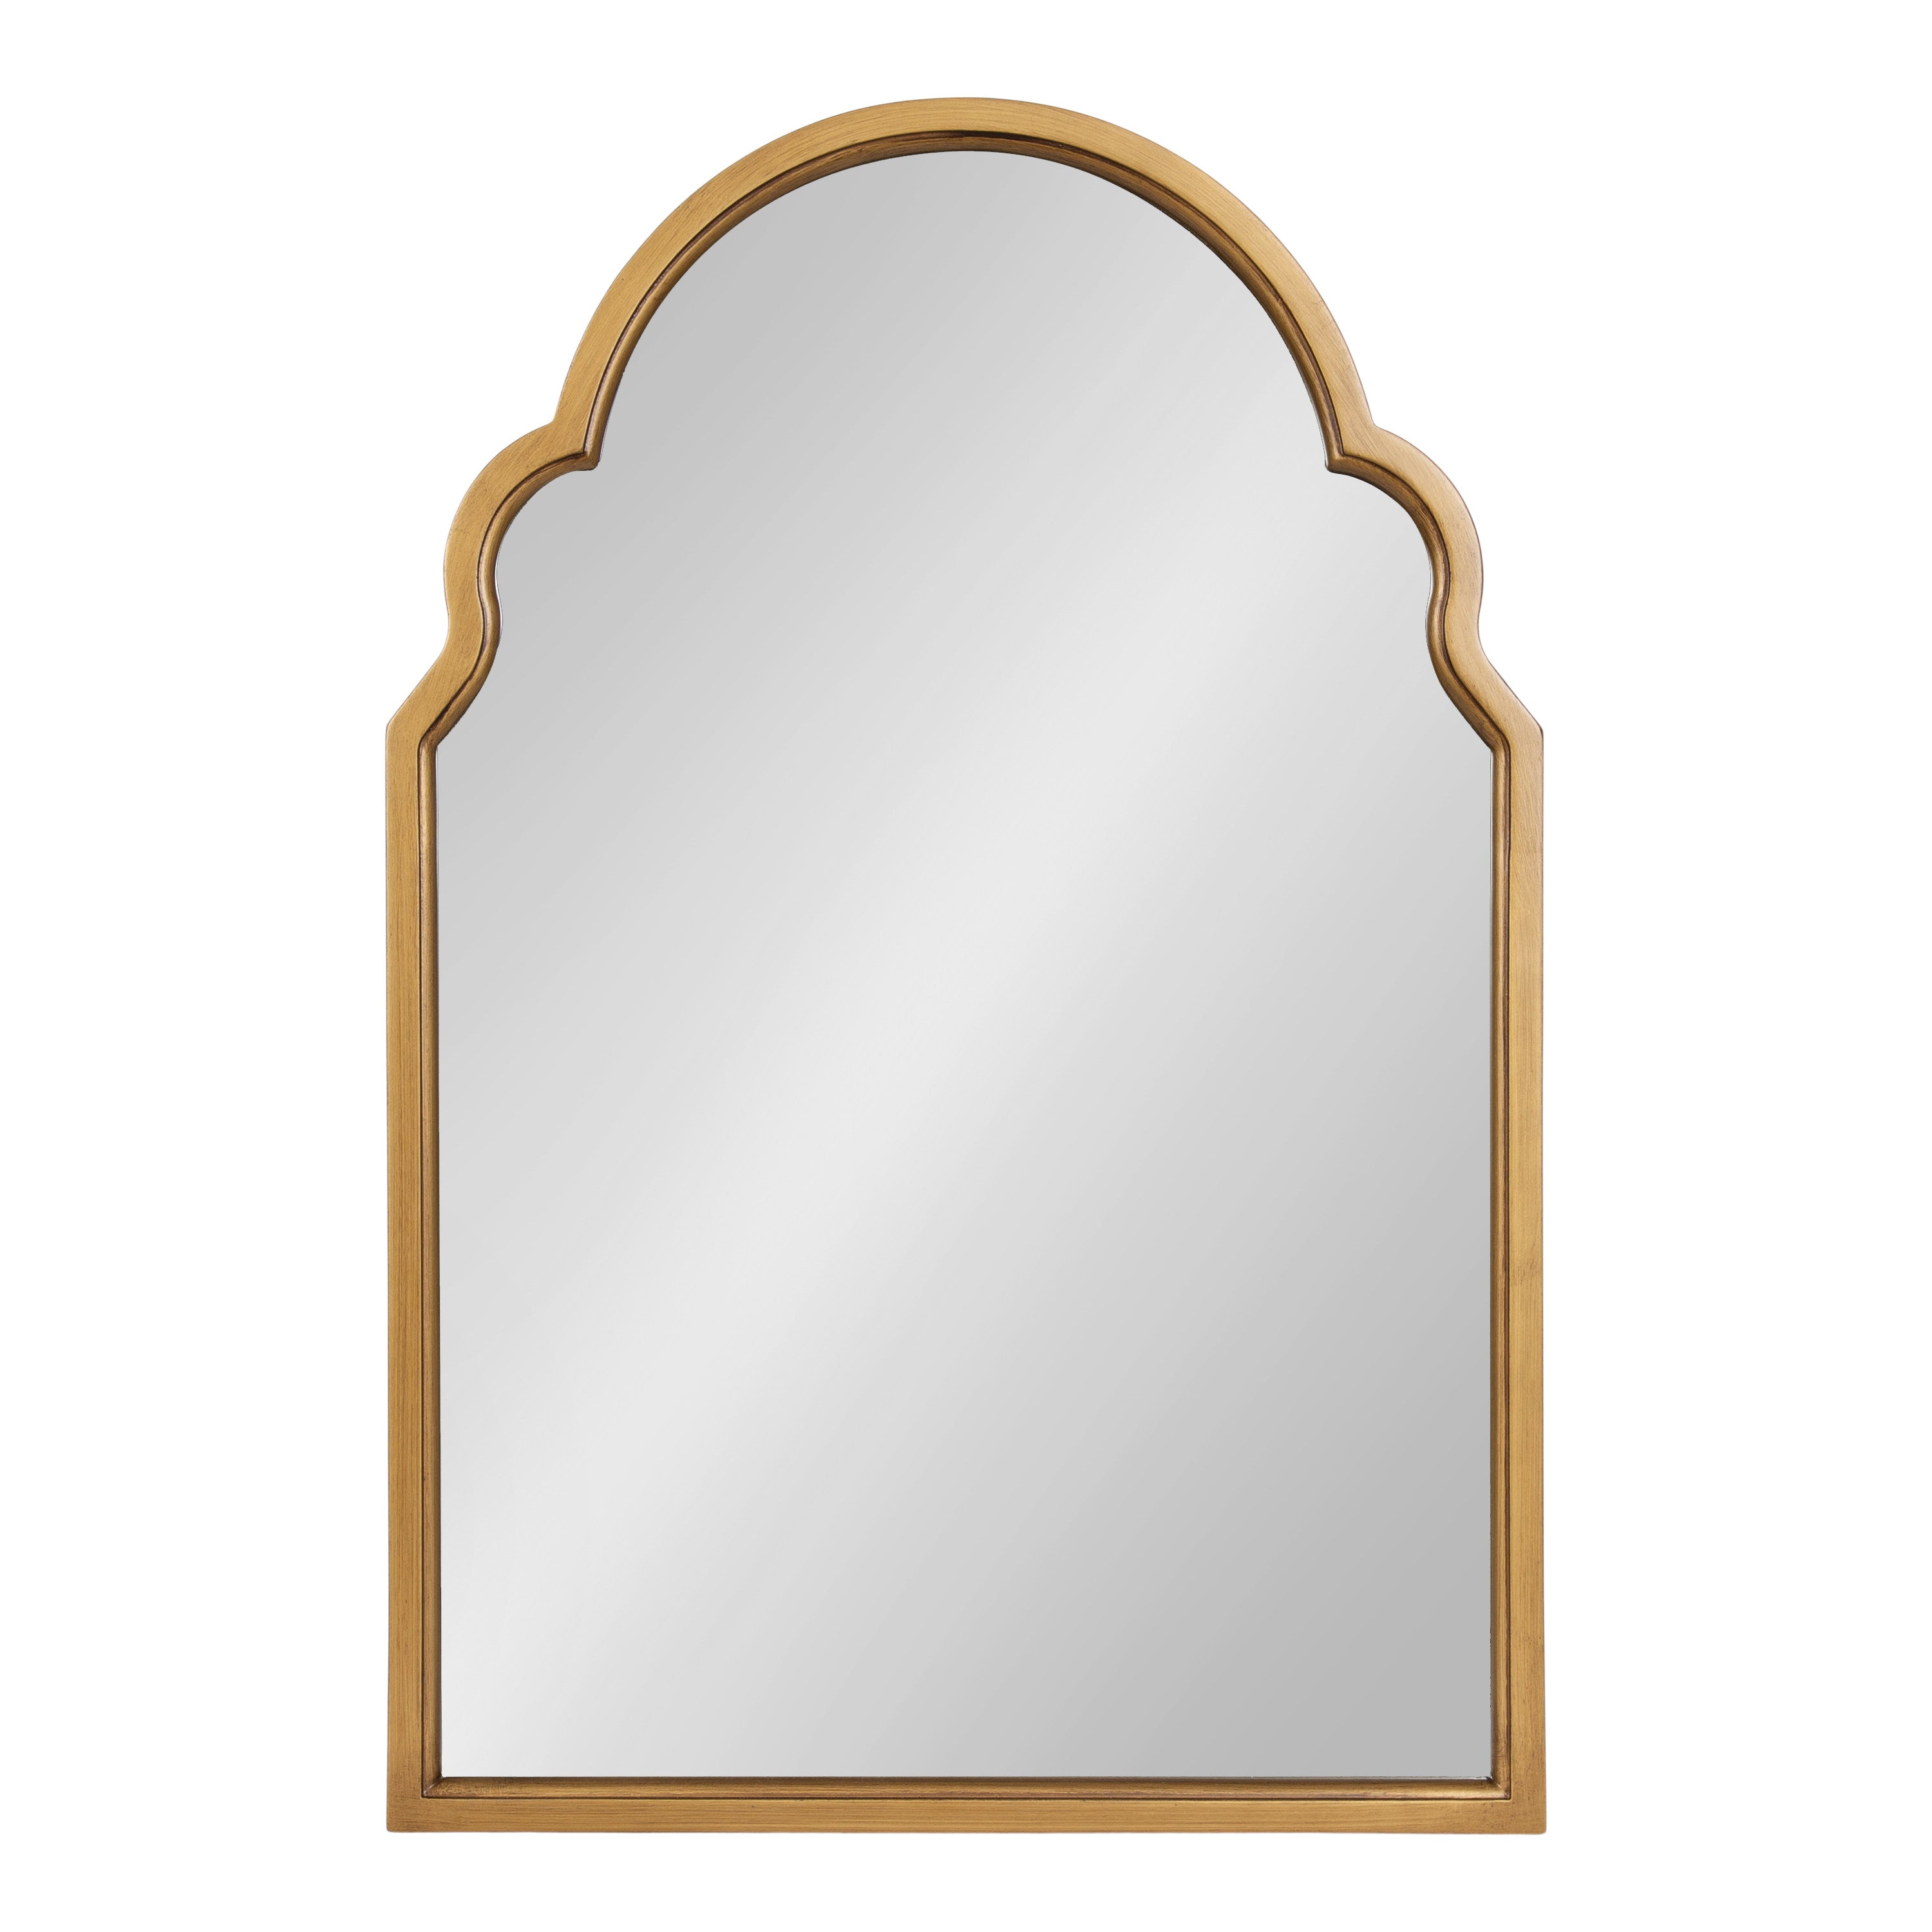 Hogan Arch Framed Mirror